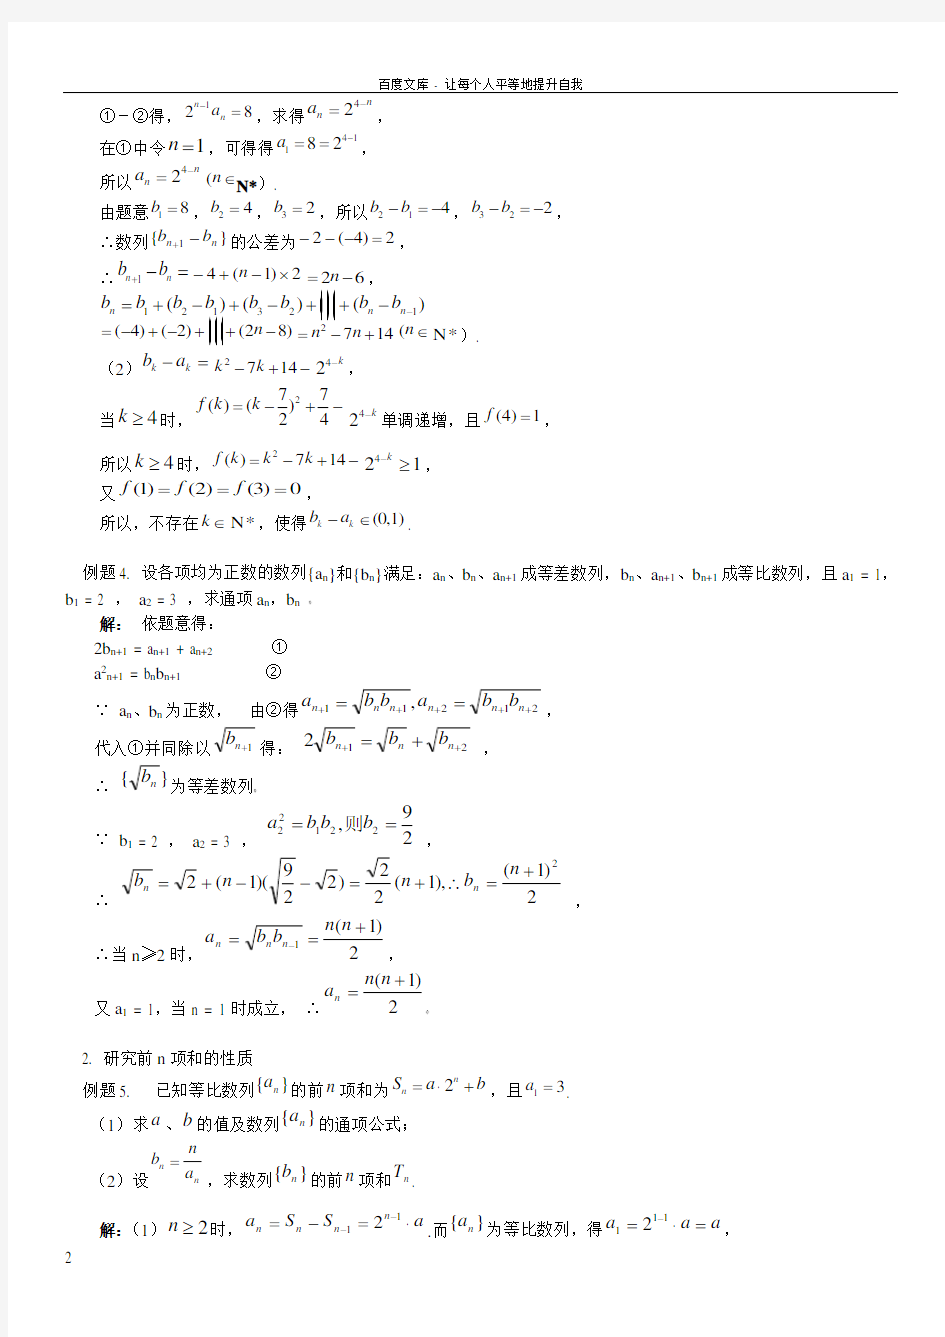 2016届高考数学经典例题集锦数列(含答案)